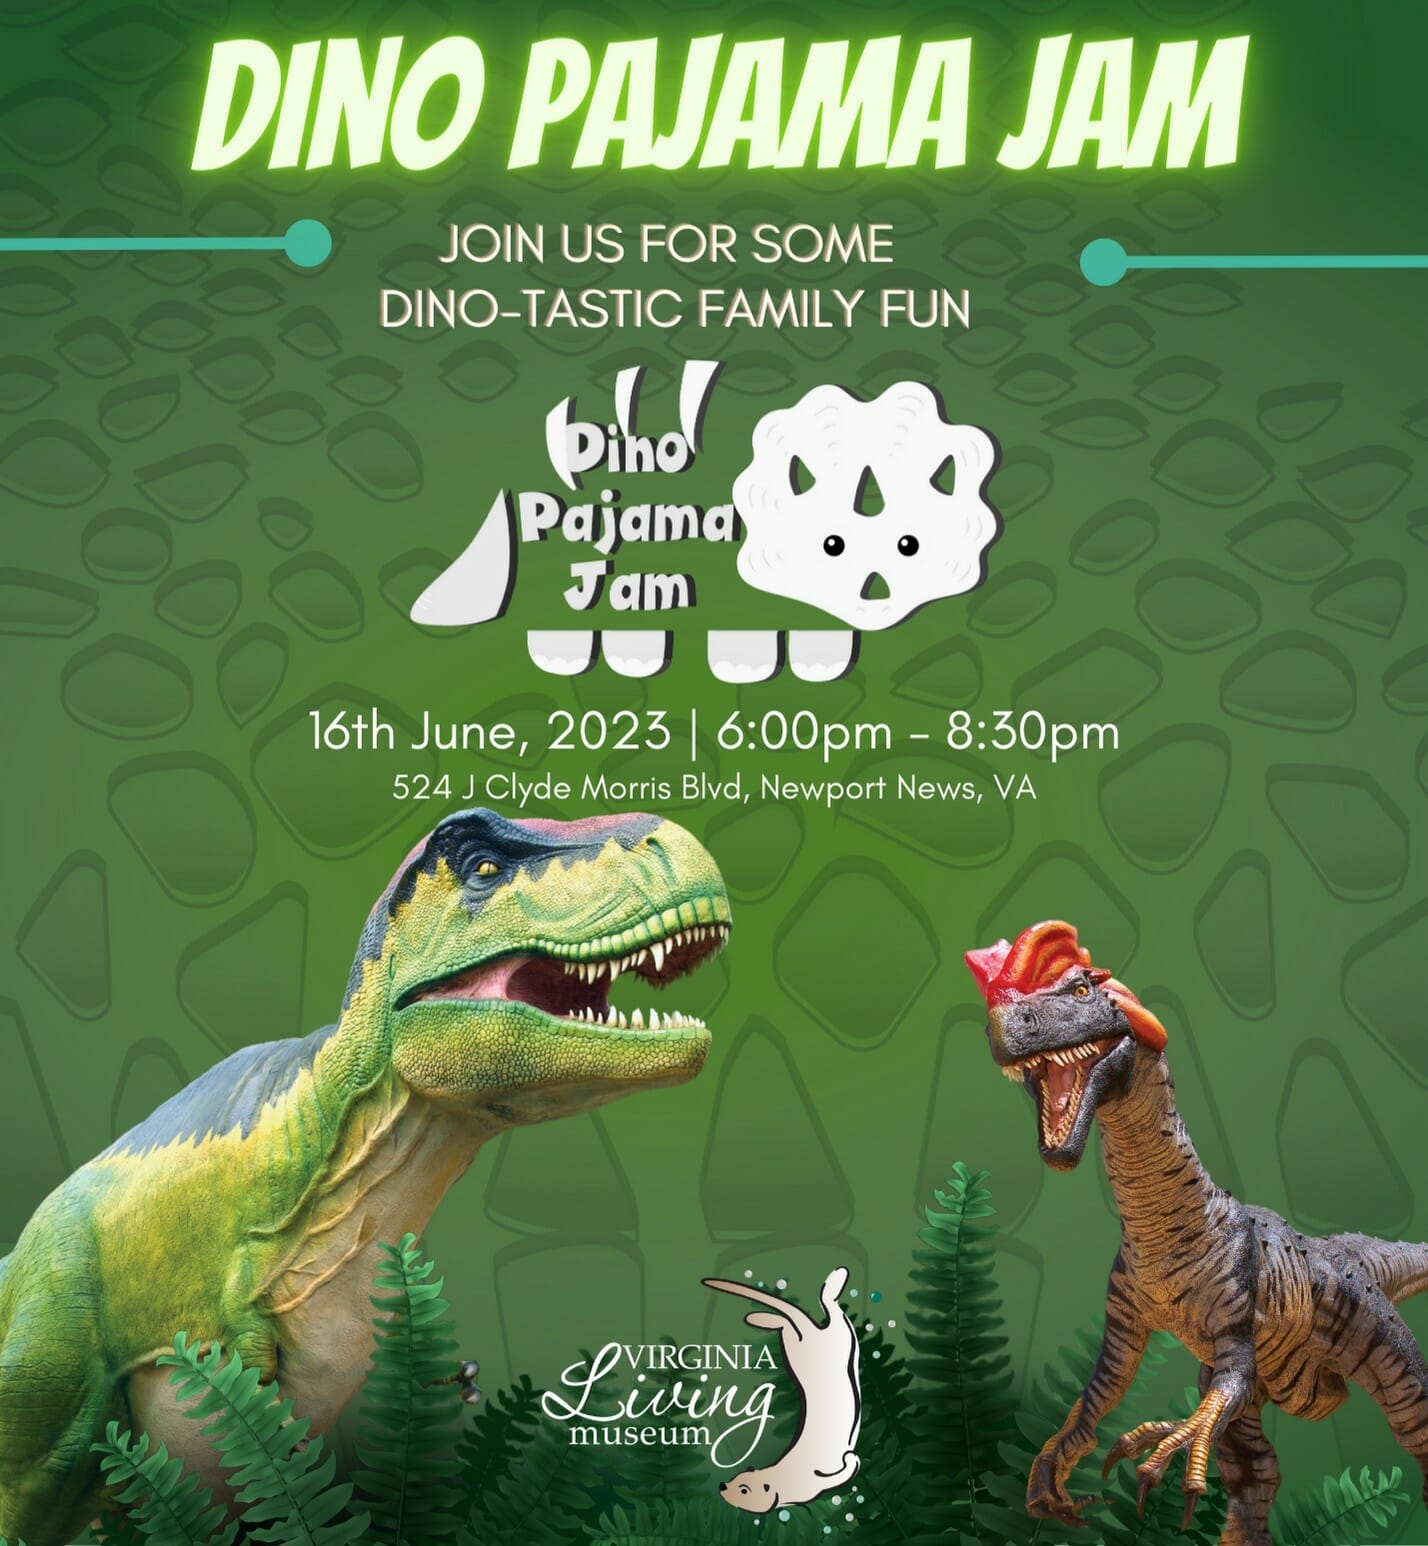 Dino Pajama Jam at the Virginia Living Museum!